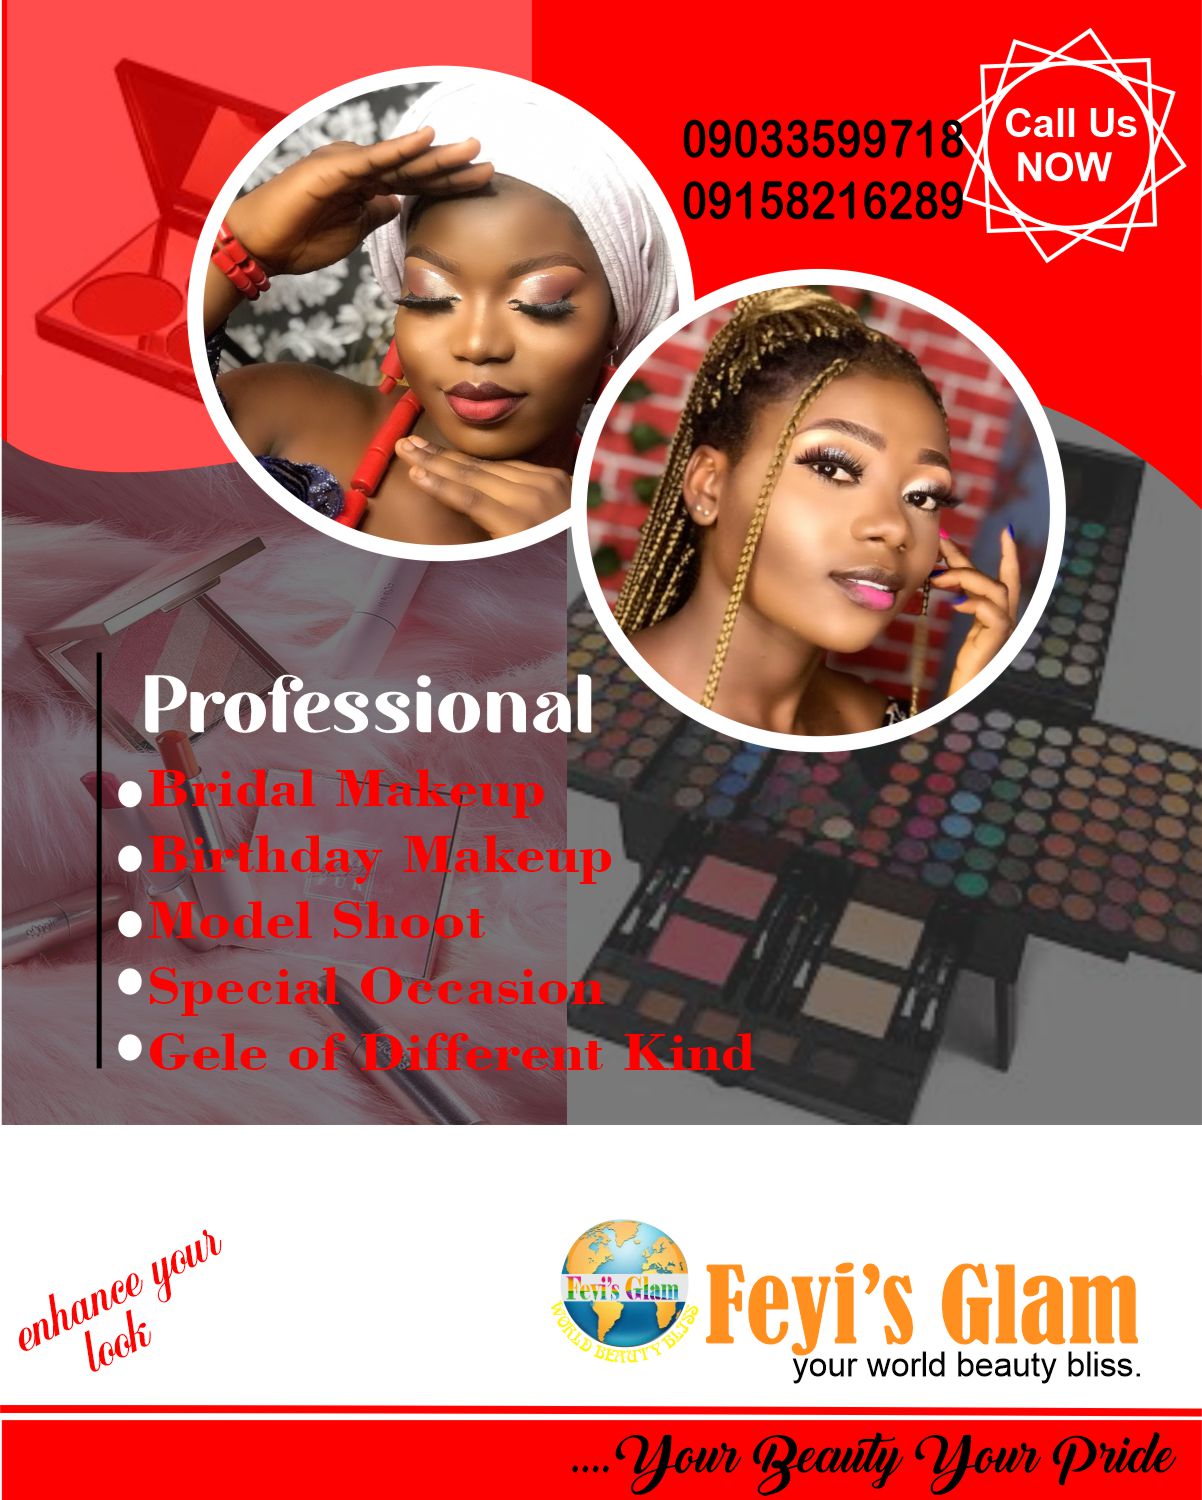 Feyi's glam provider